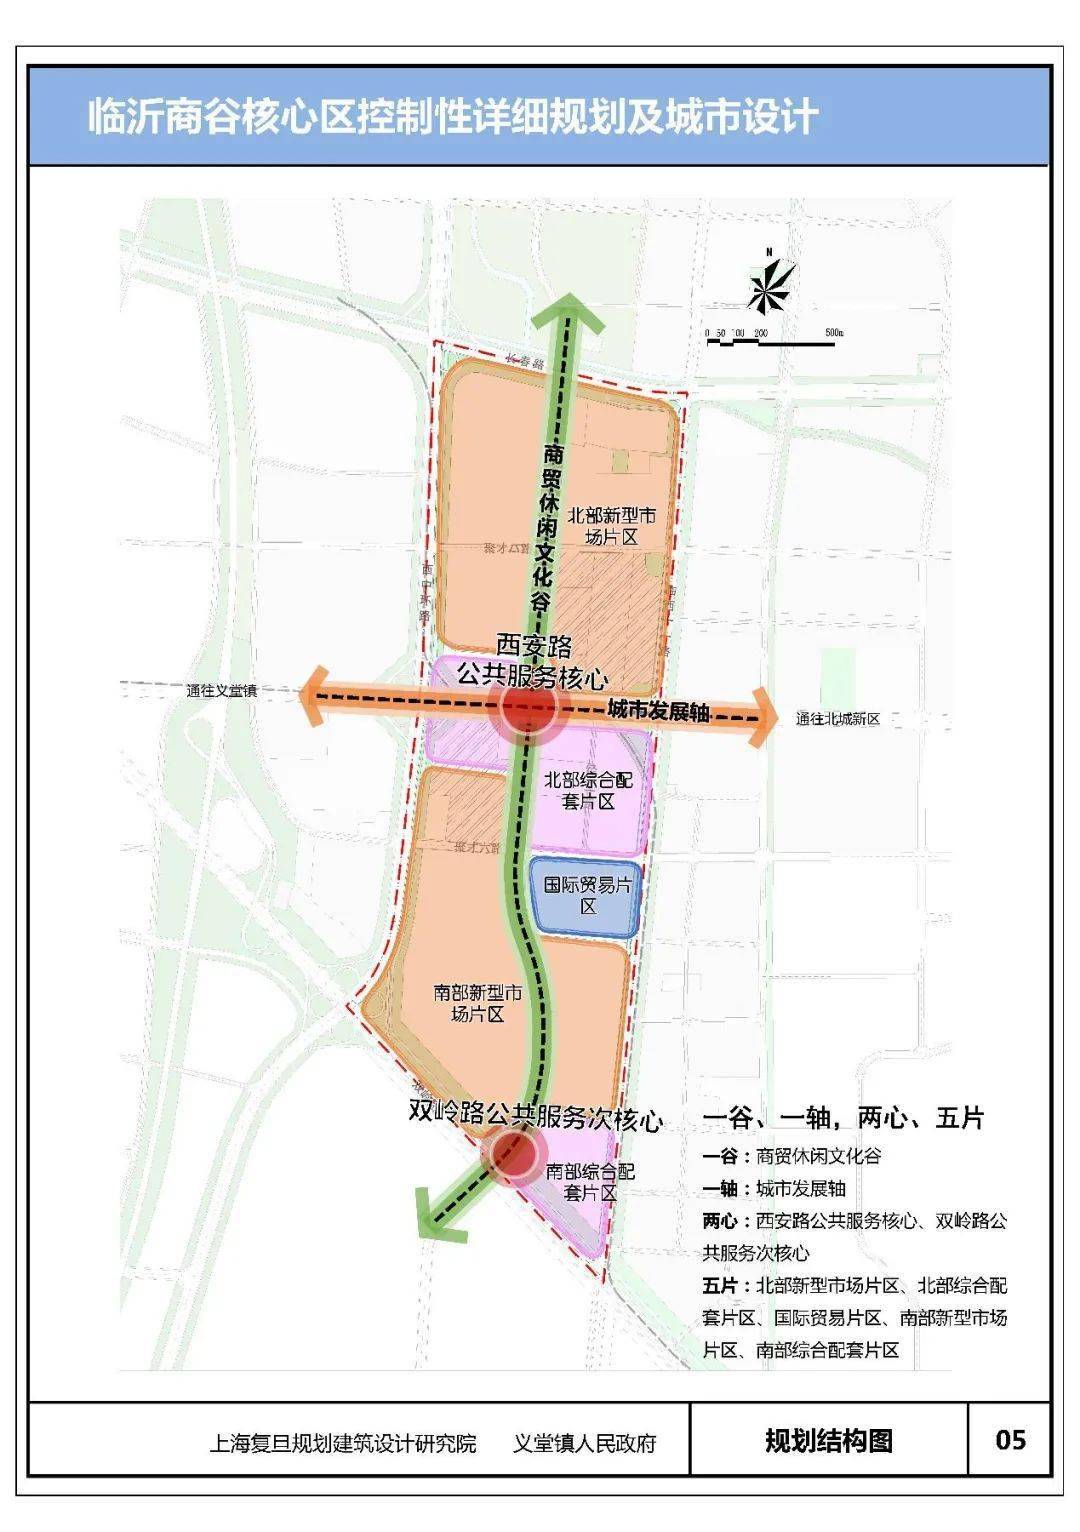 《临沂商谷核心区控制性详细规划及城市设计》批前公示